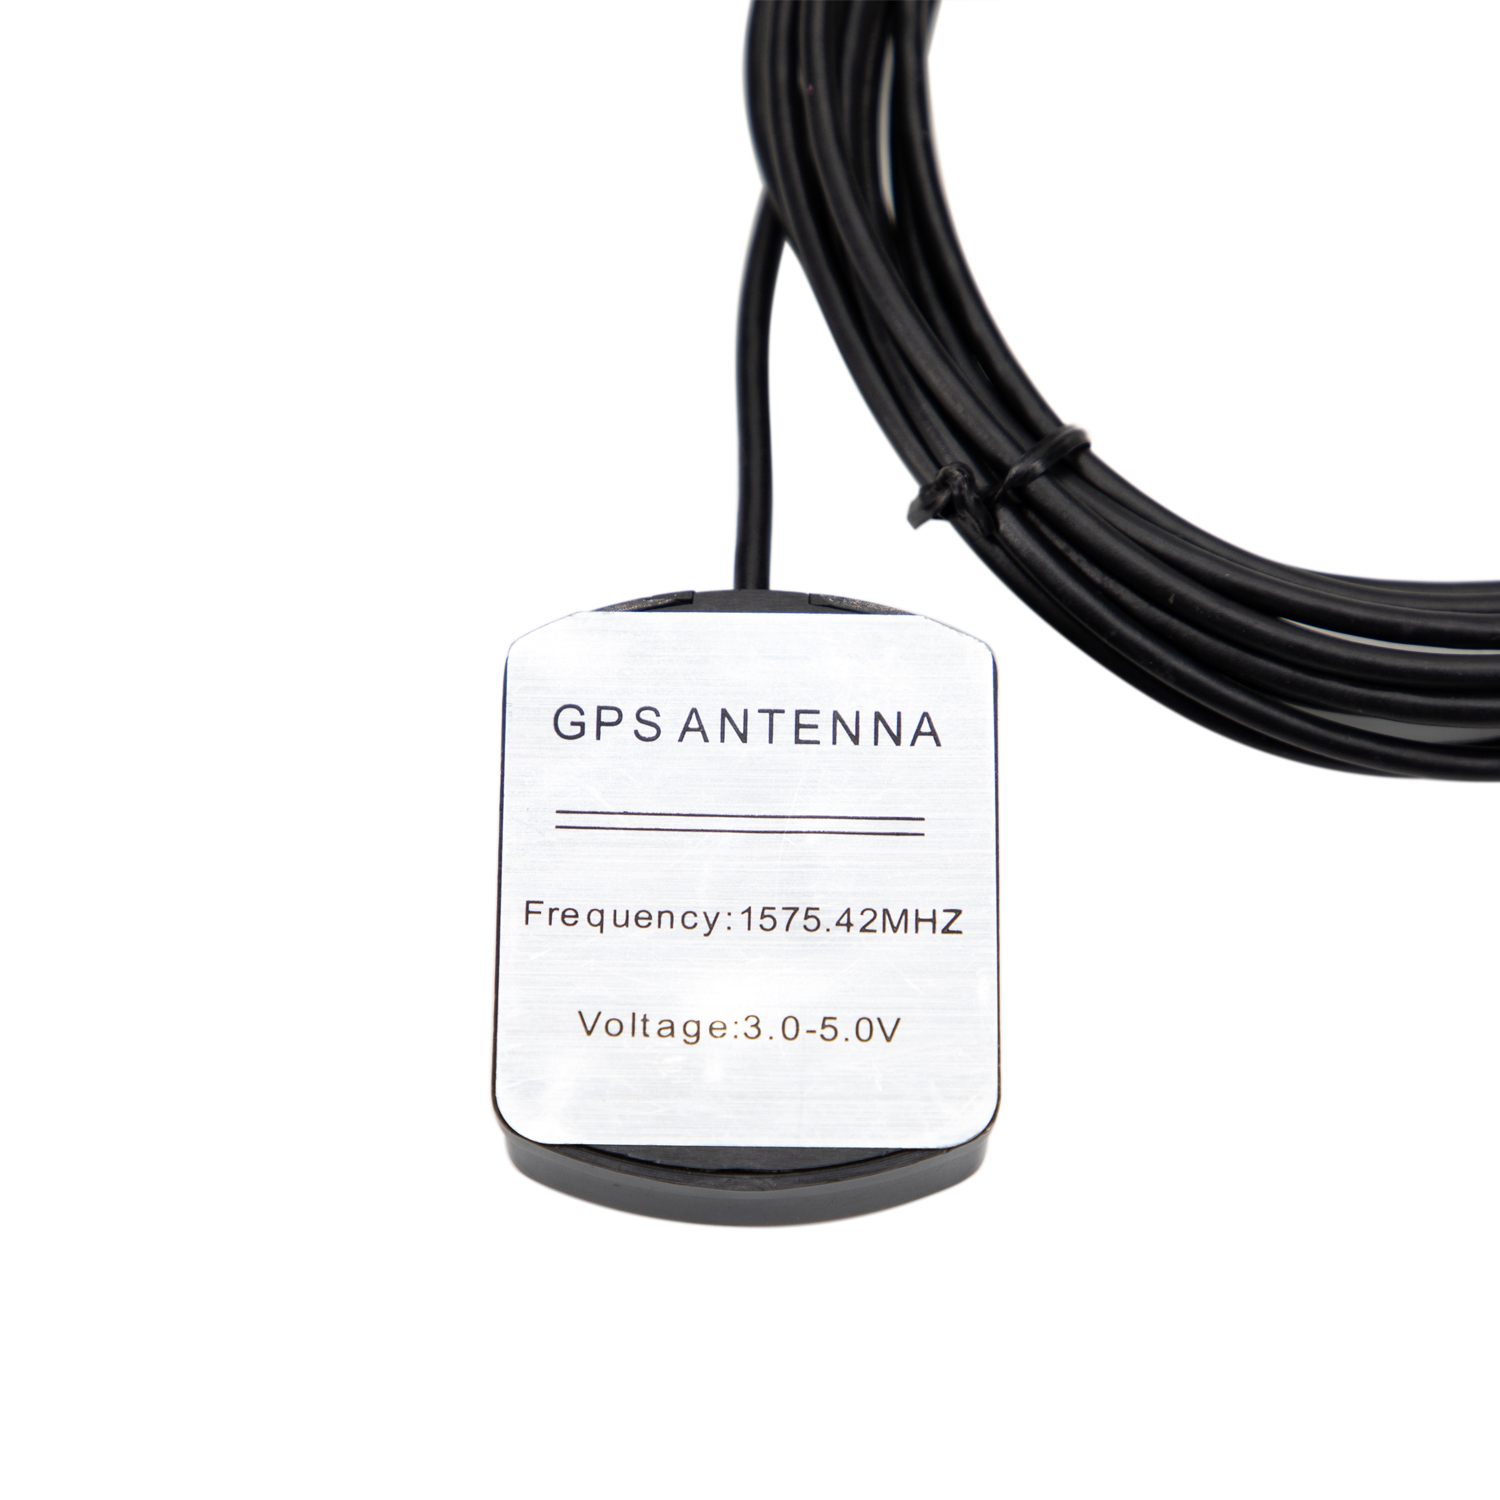  GPSGlonass Antenna   